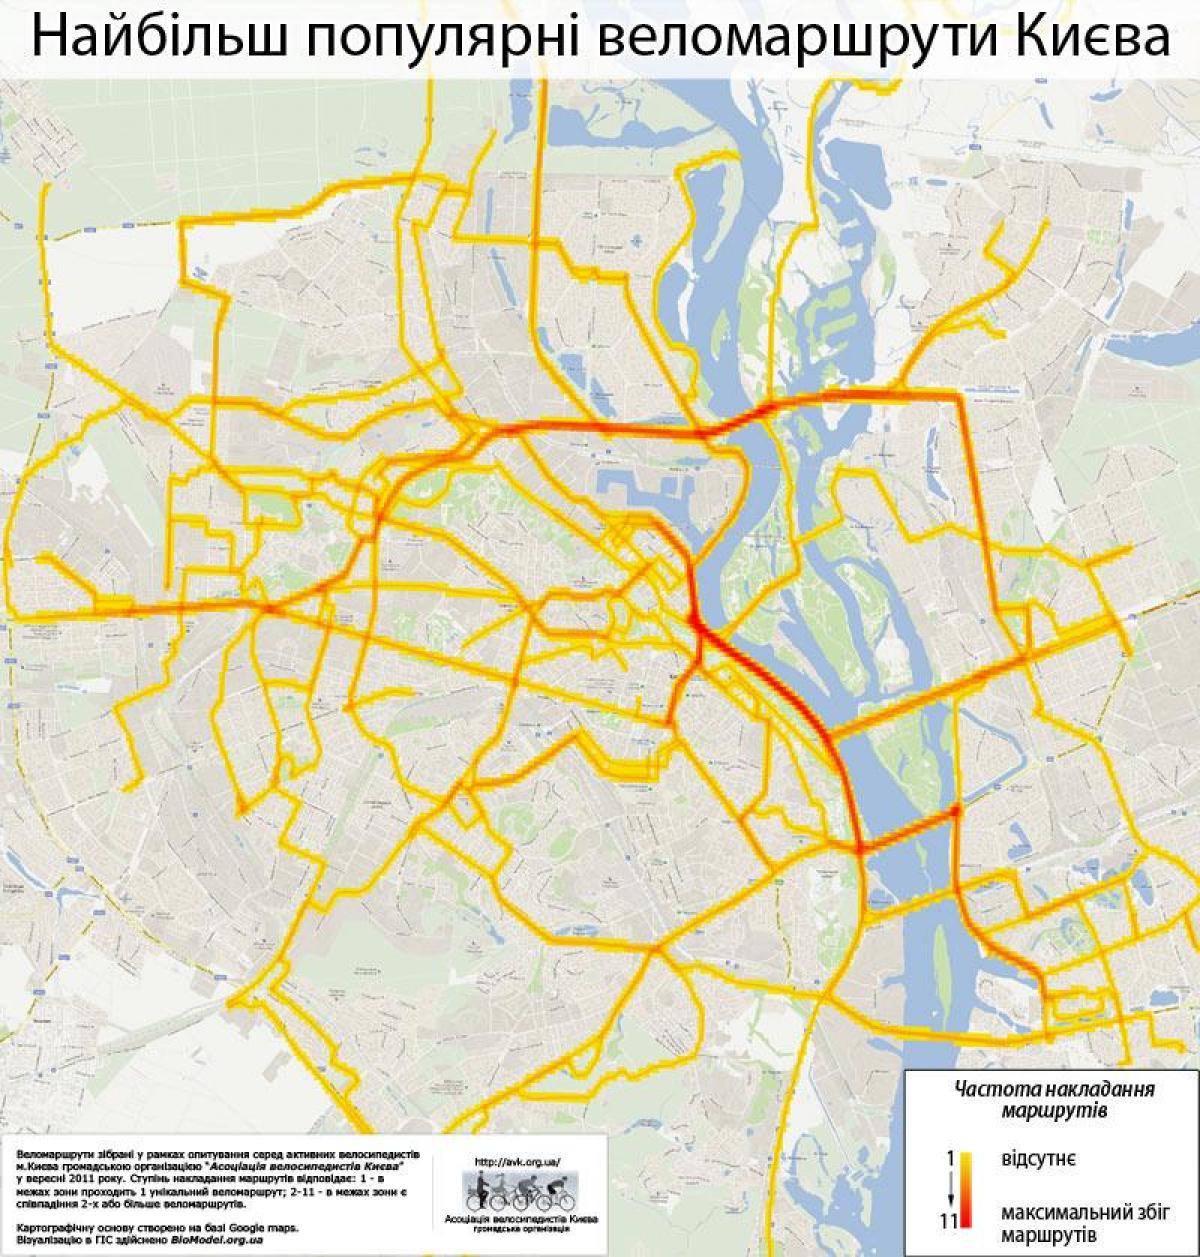 Mapa pasów rowerowych w Kijowie